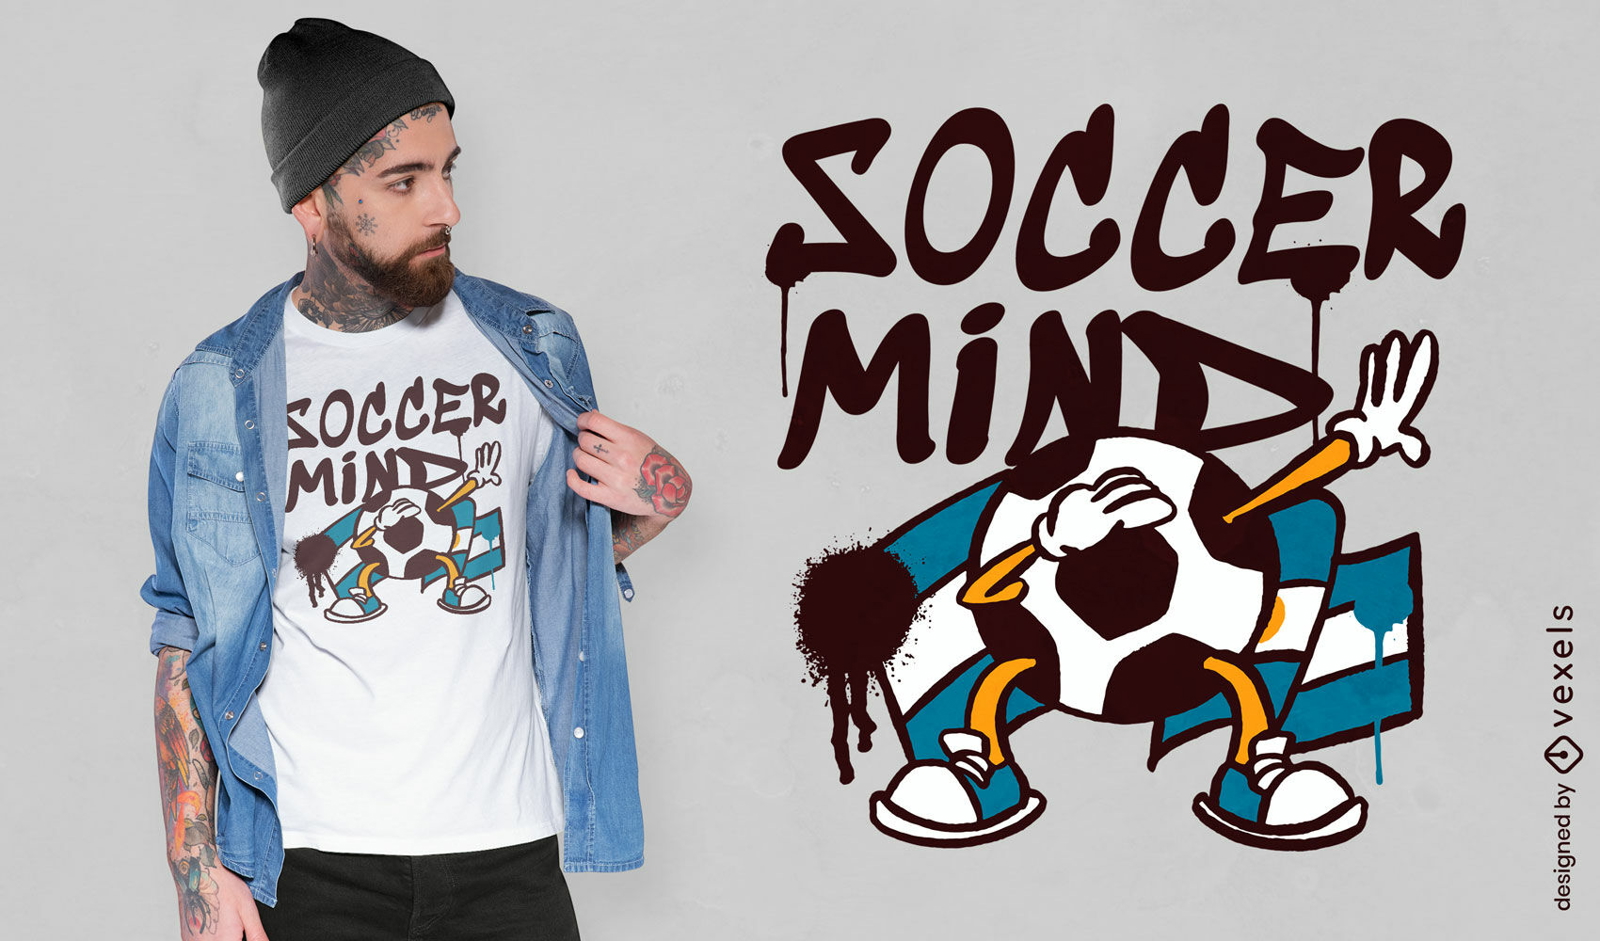 Argentina soccer ball t-shirt design